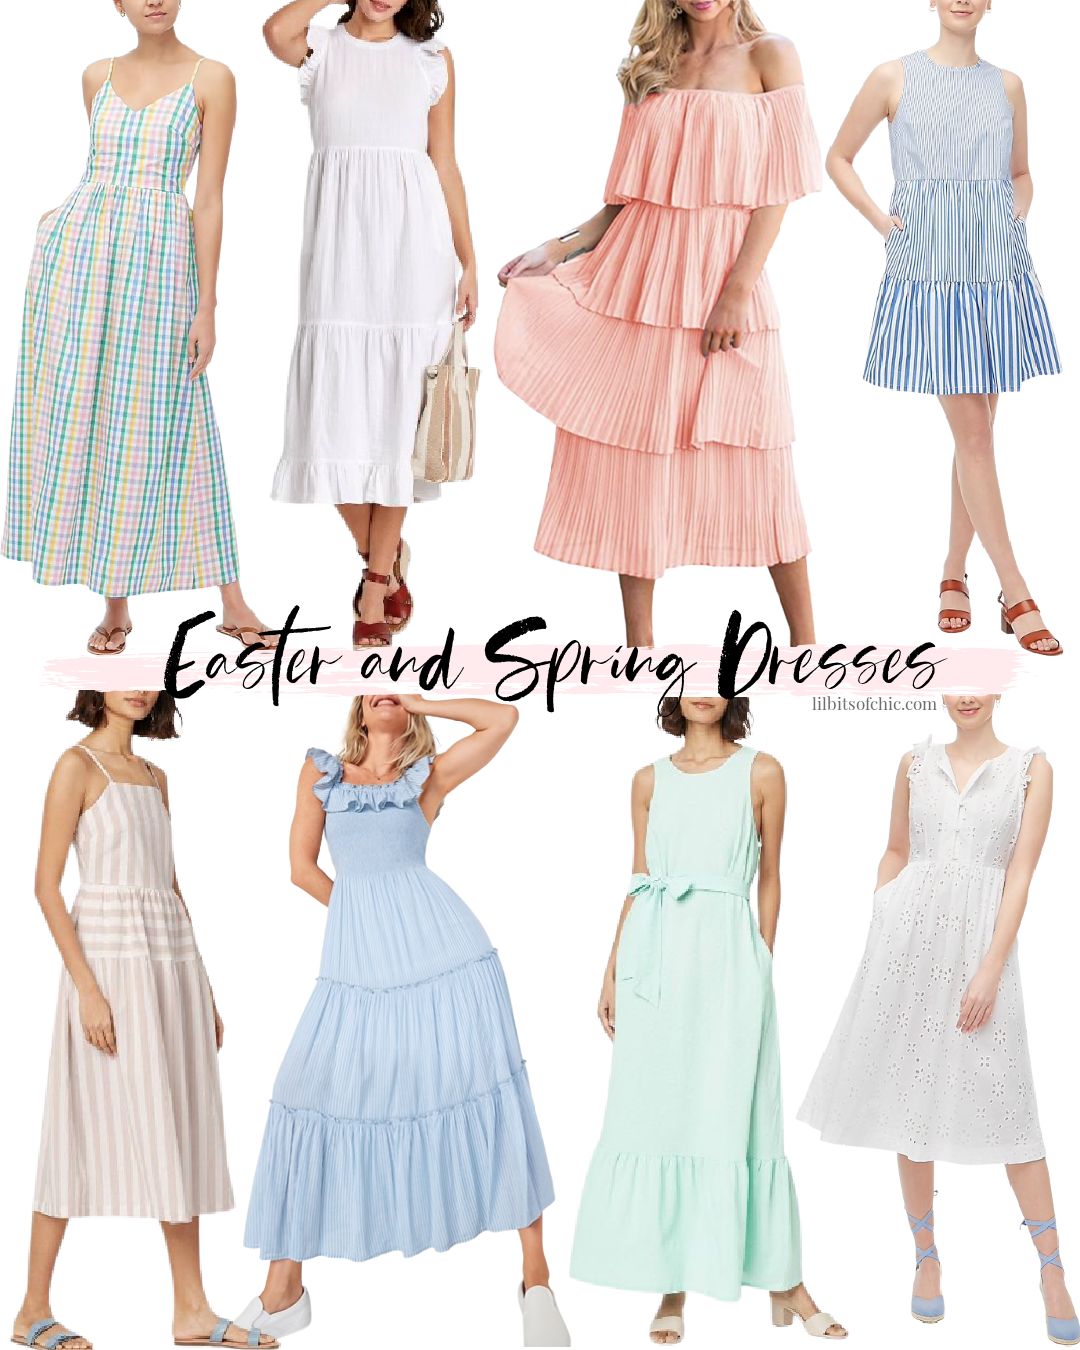 Easter Spring Dresses under $100